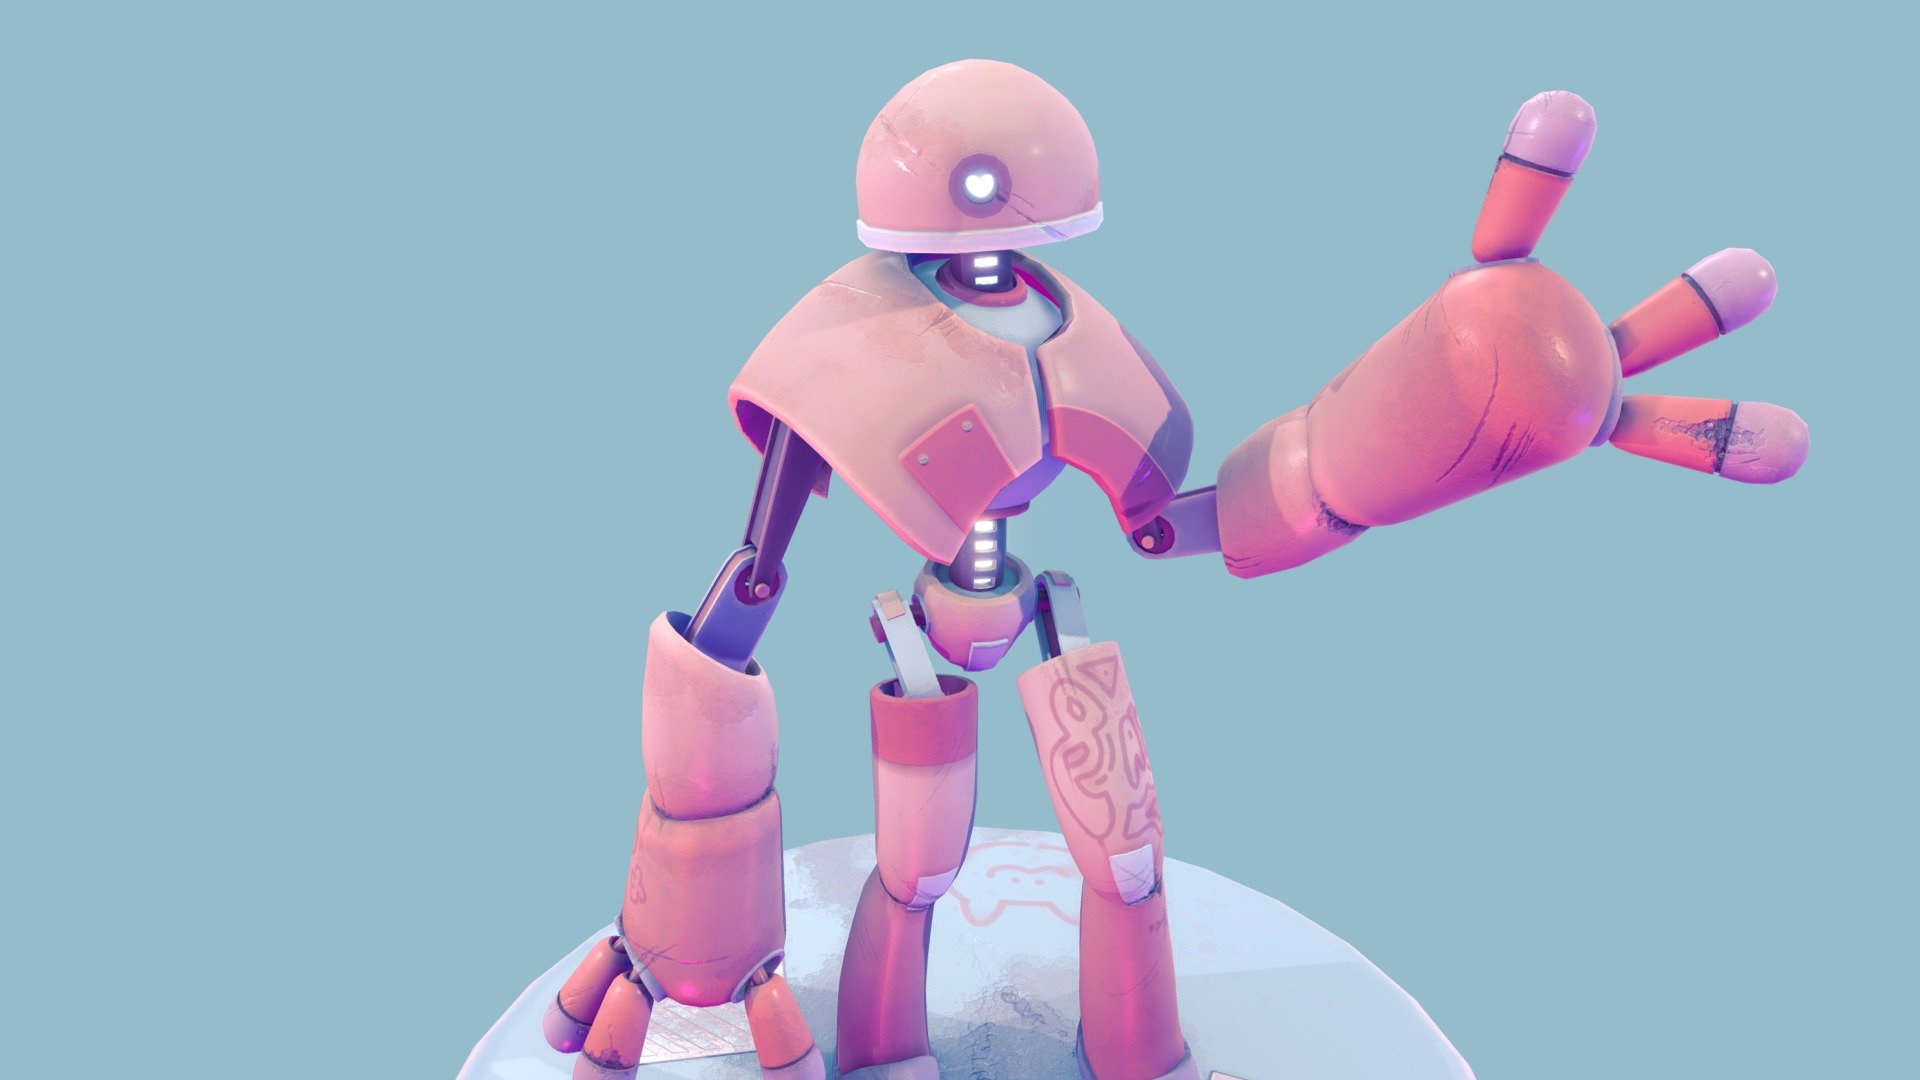 ArtStation - Mr. Robot (Fan Art) Wallpaper - 3 Versions